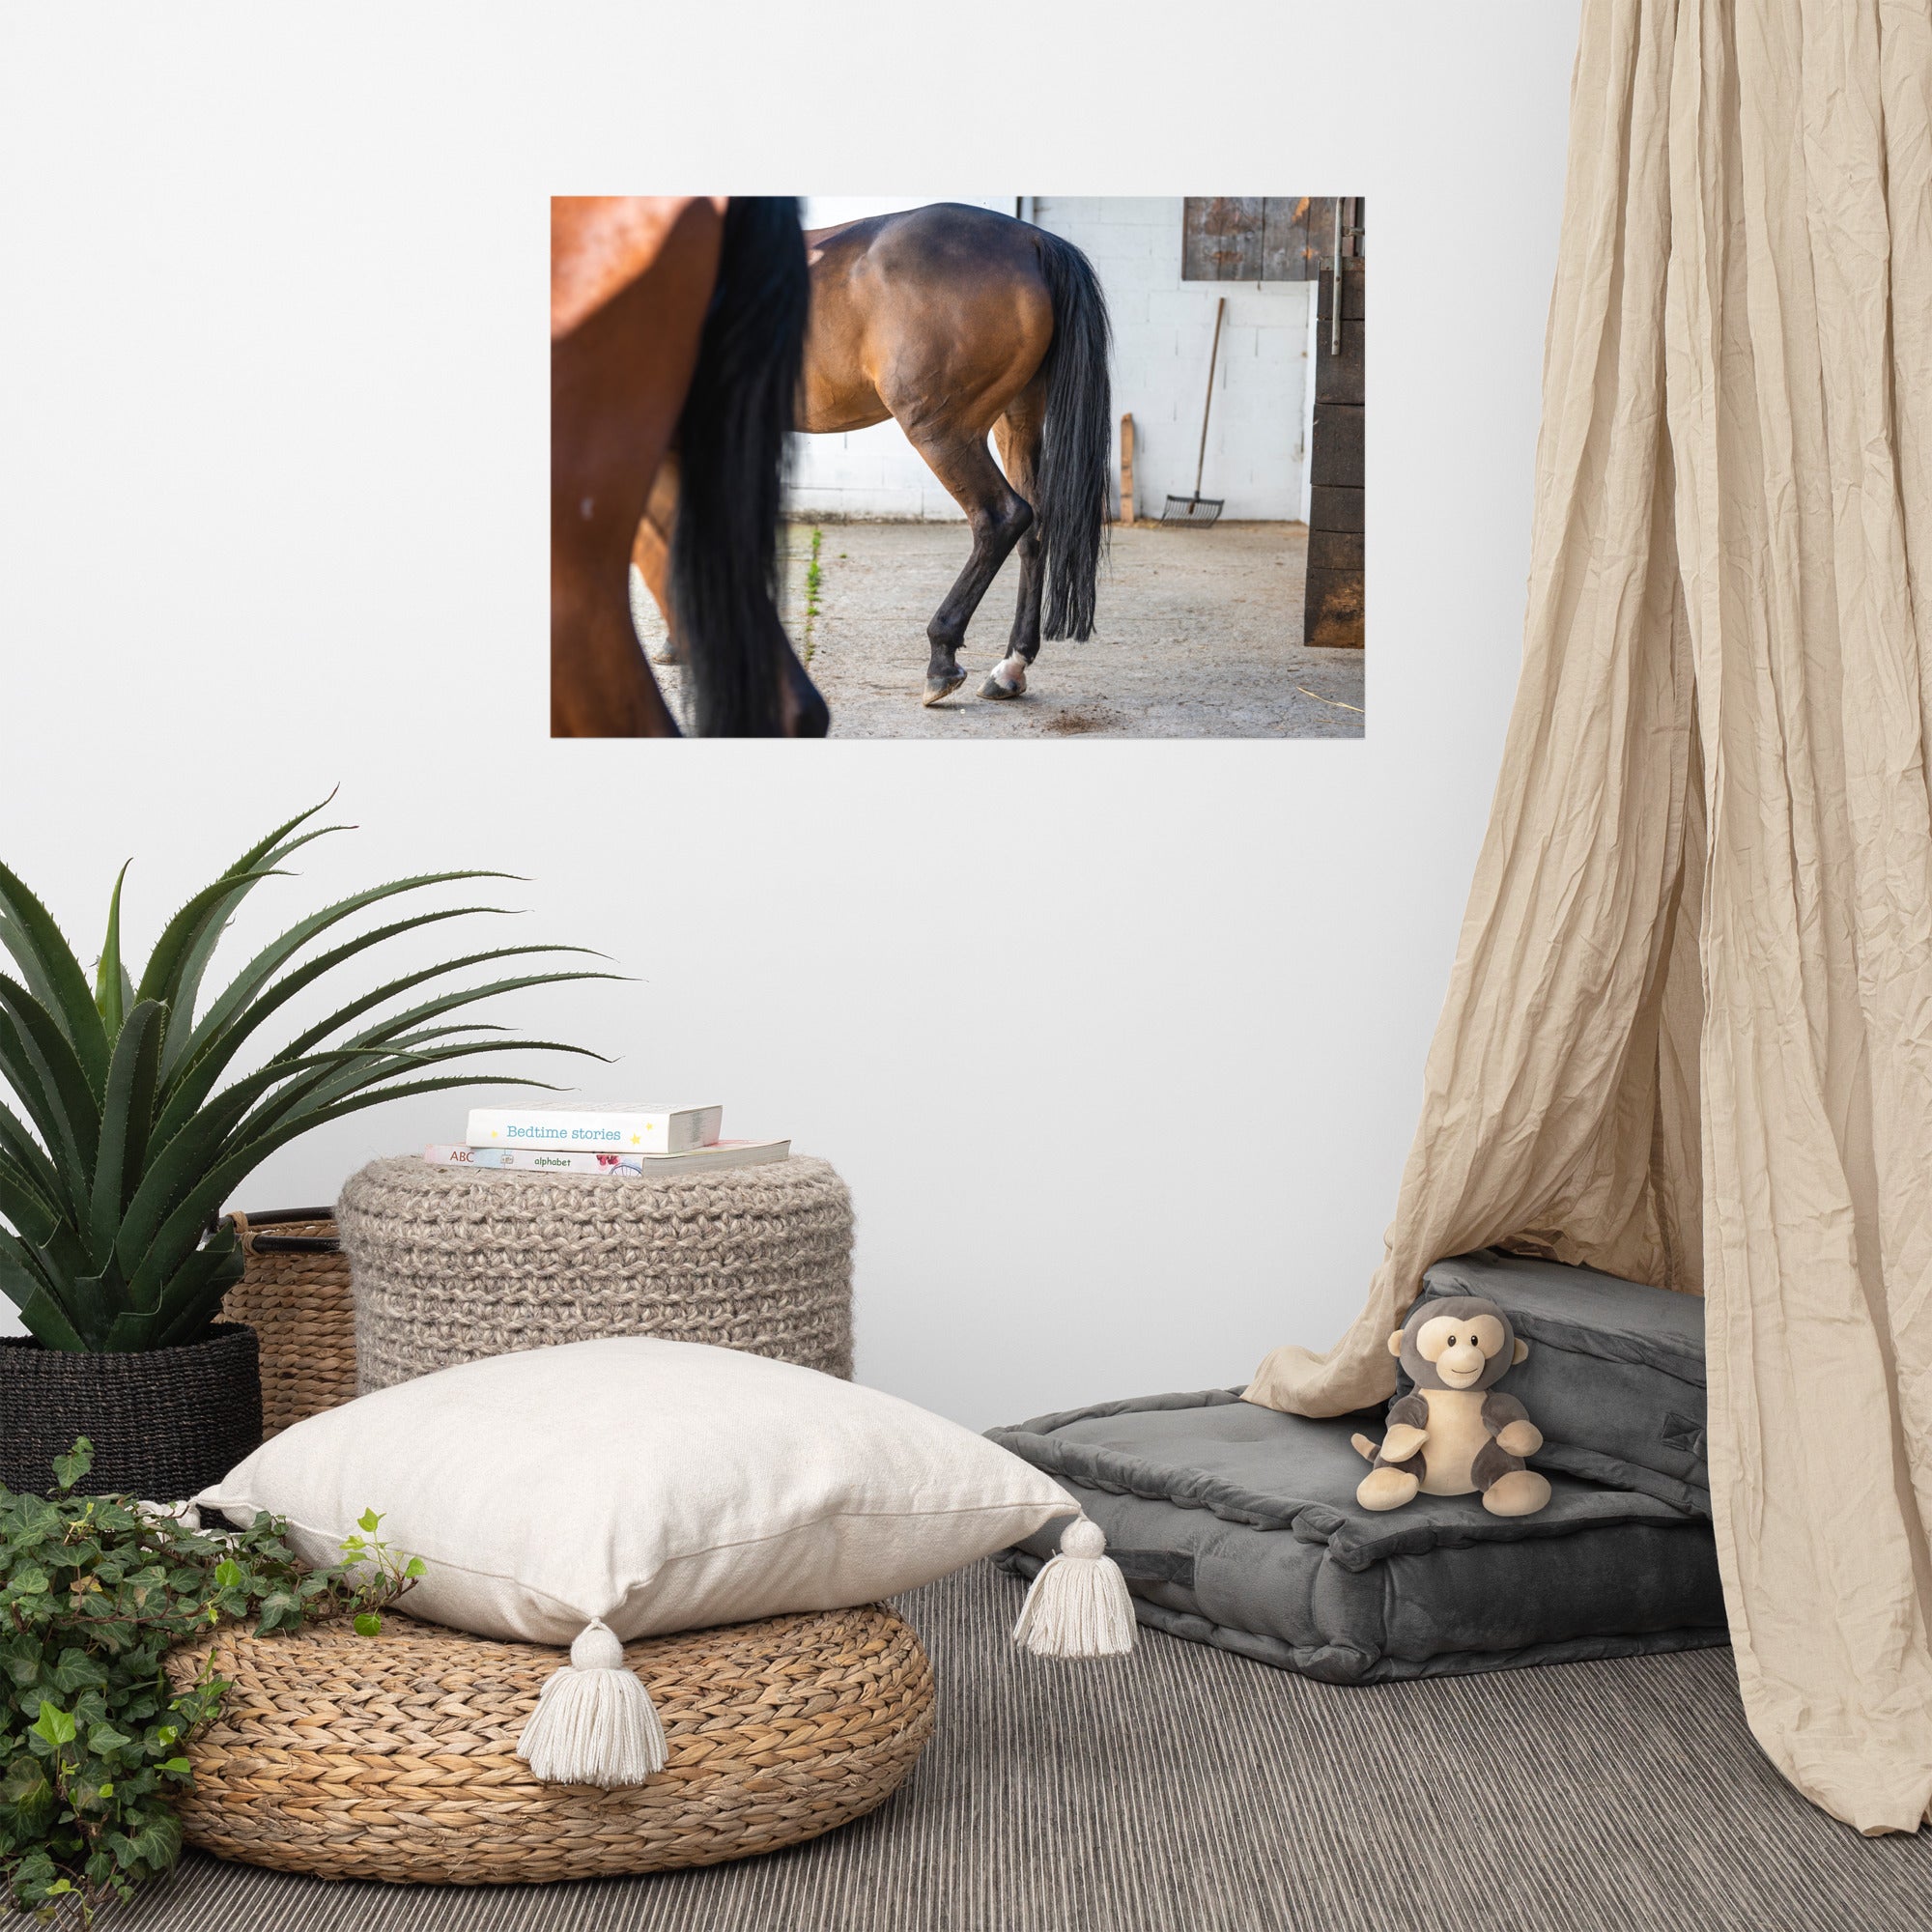 Photographie artistique 'Au repos dans l'écurie' dépeignant le mouvement gracieux d'un cheval, imprimée sur du papier de première qualité.